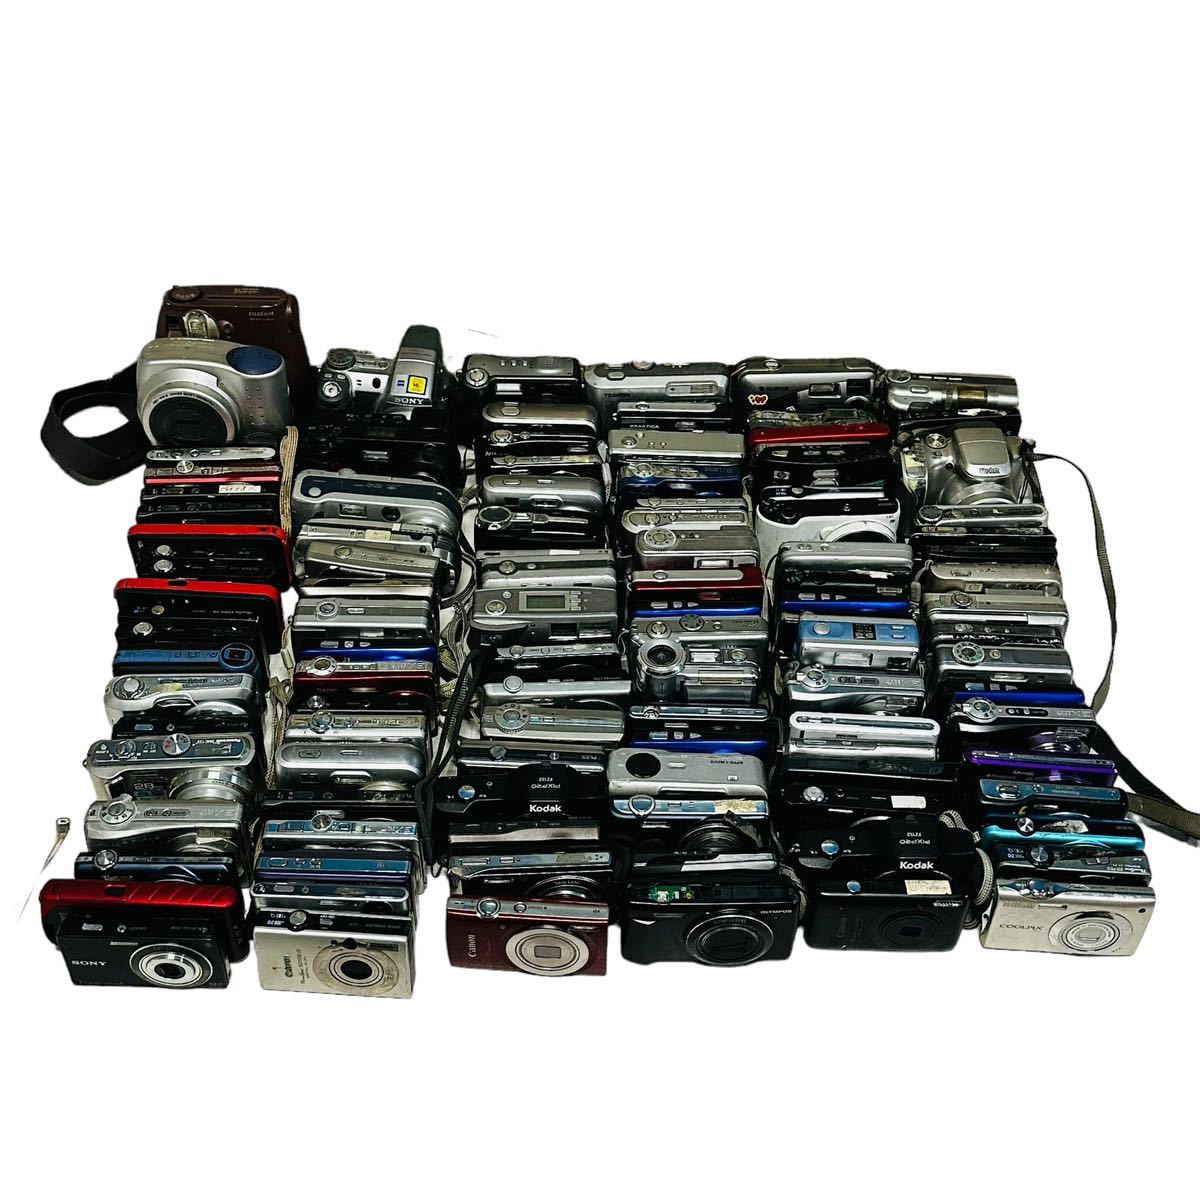 デジタルカメラ SONY NIKON CASIO PANASONIC RICOH OLYMPUS PENTAX コンパクトデジカメラ まとめ100台 中古品_画像8